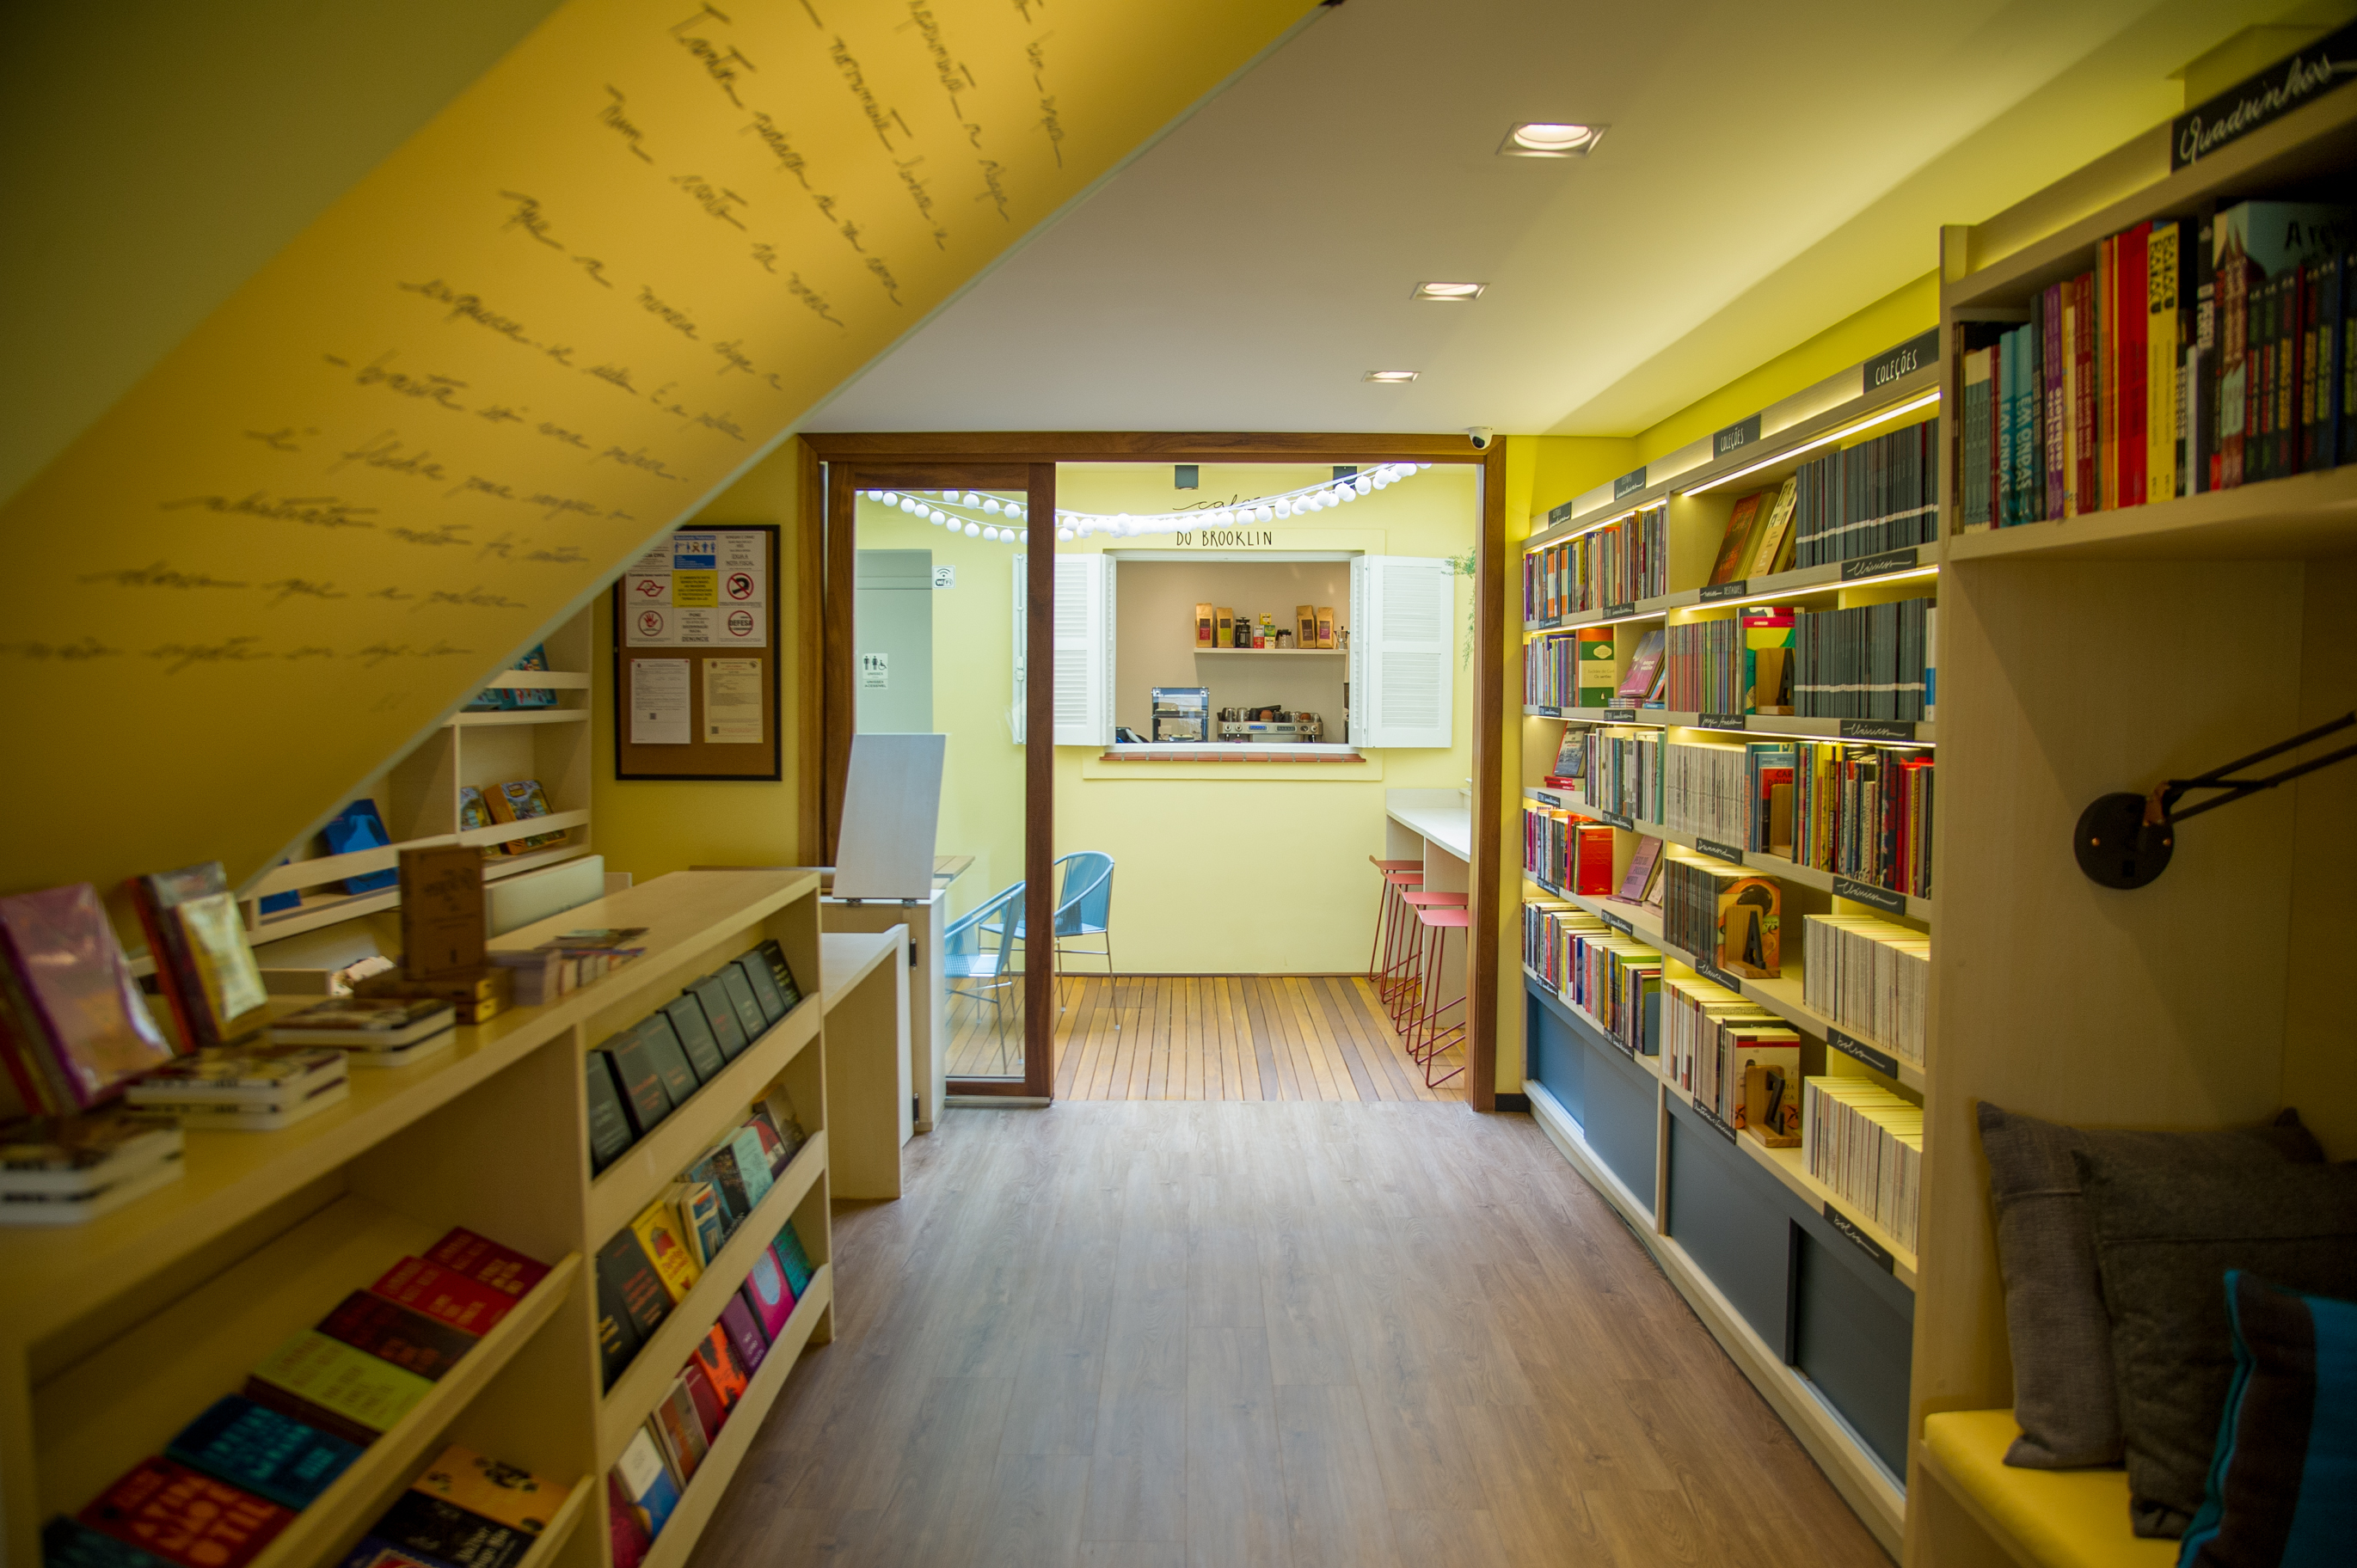 Foto exibe de modo centralizado o espaço da livraria, com chão de madeira, luzes embutidas no teto e duas prateleiras nas duas paredes.